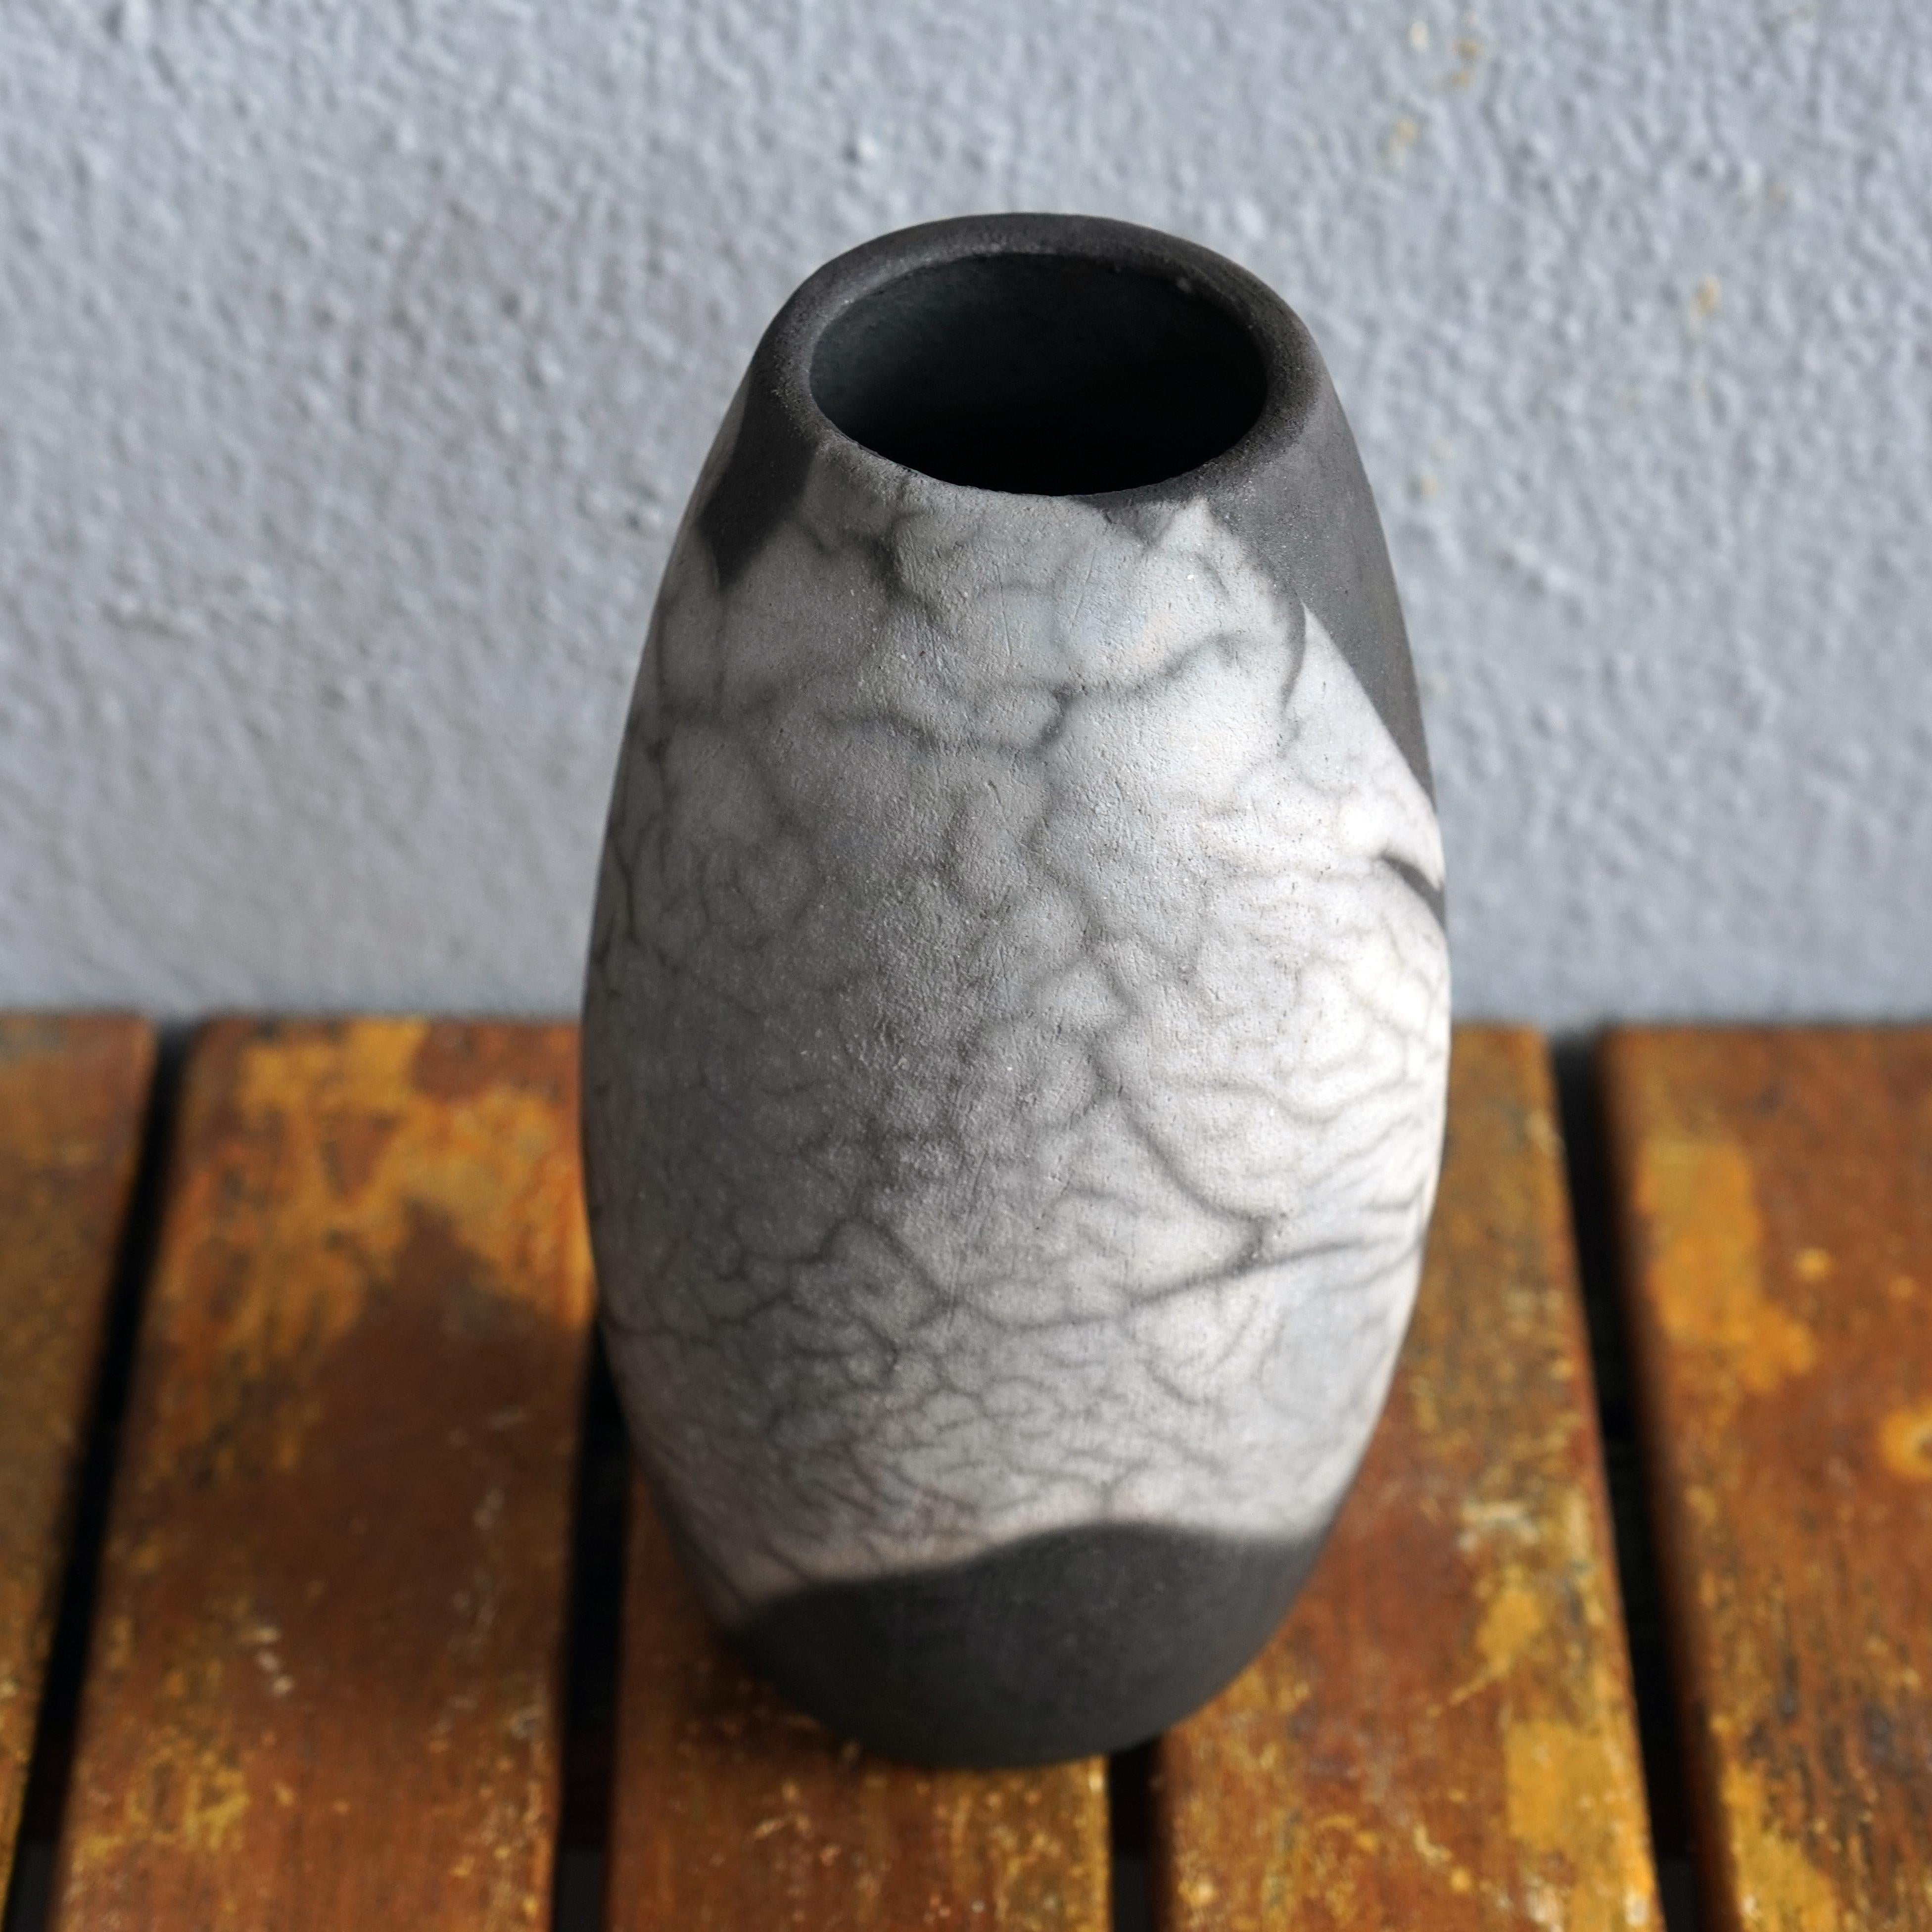 Tsuri ( ツリー ) ~ (n) Arbre

Notre vase Tsuri est basé sur la forme classique d'une bouteille, mais avec une ouverture plus large au sommet. Il serait certainement parfait associé à d'autres vases RAAQUU BASICS.

Vous pouvez décorer votre espace avec